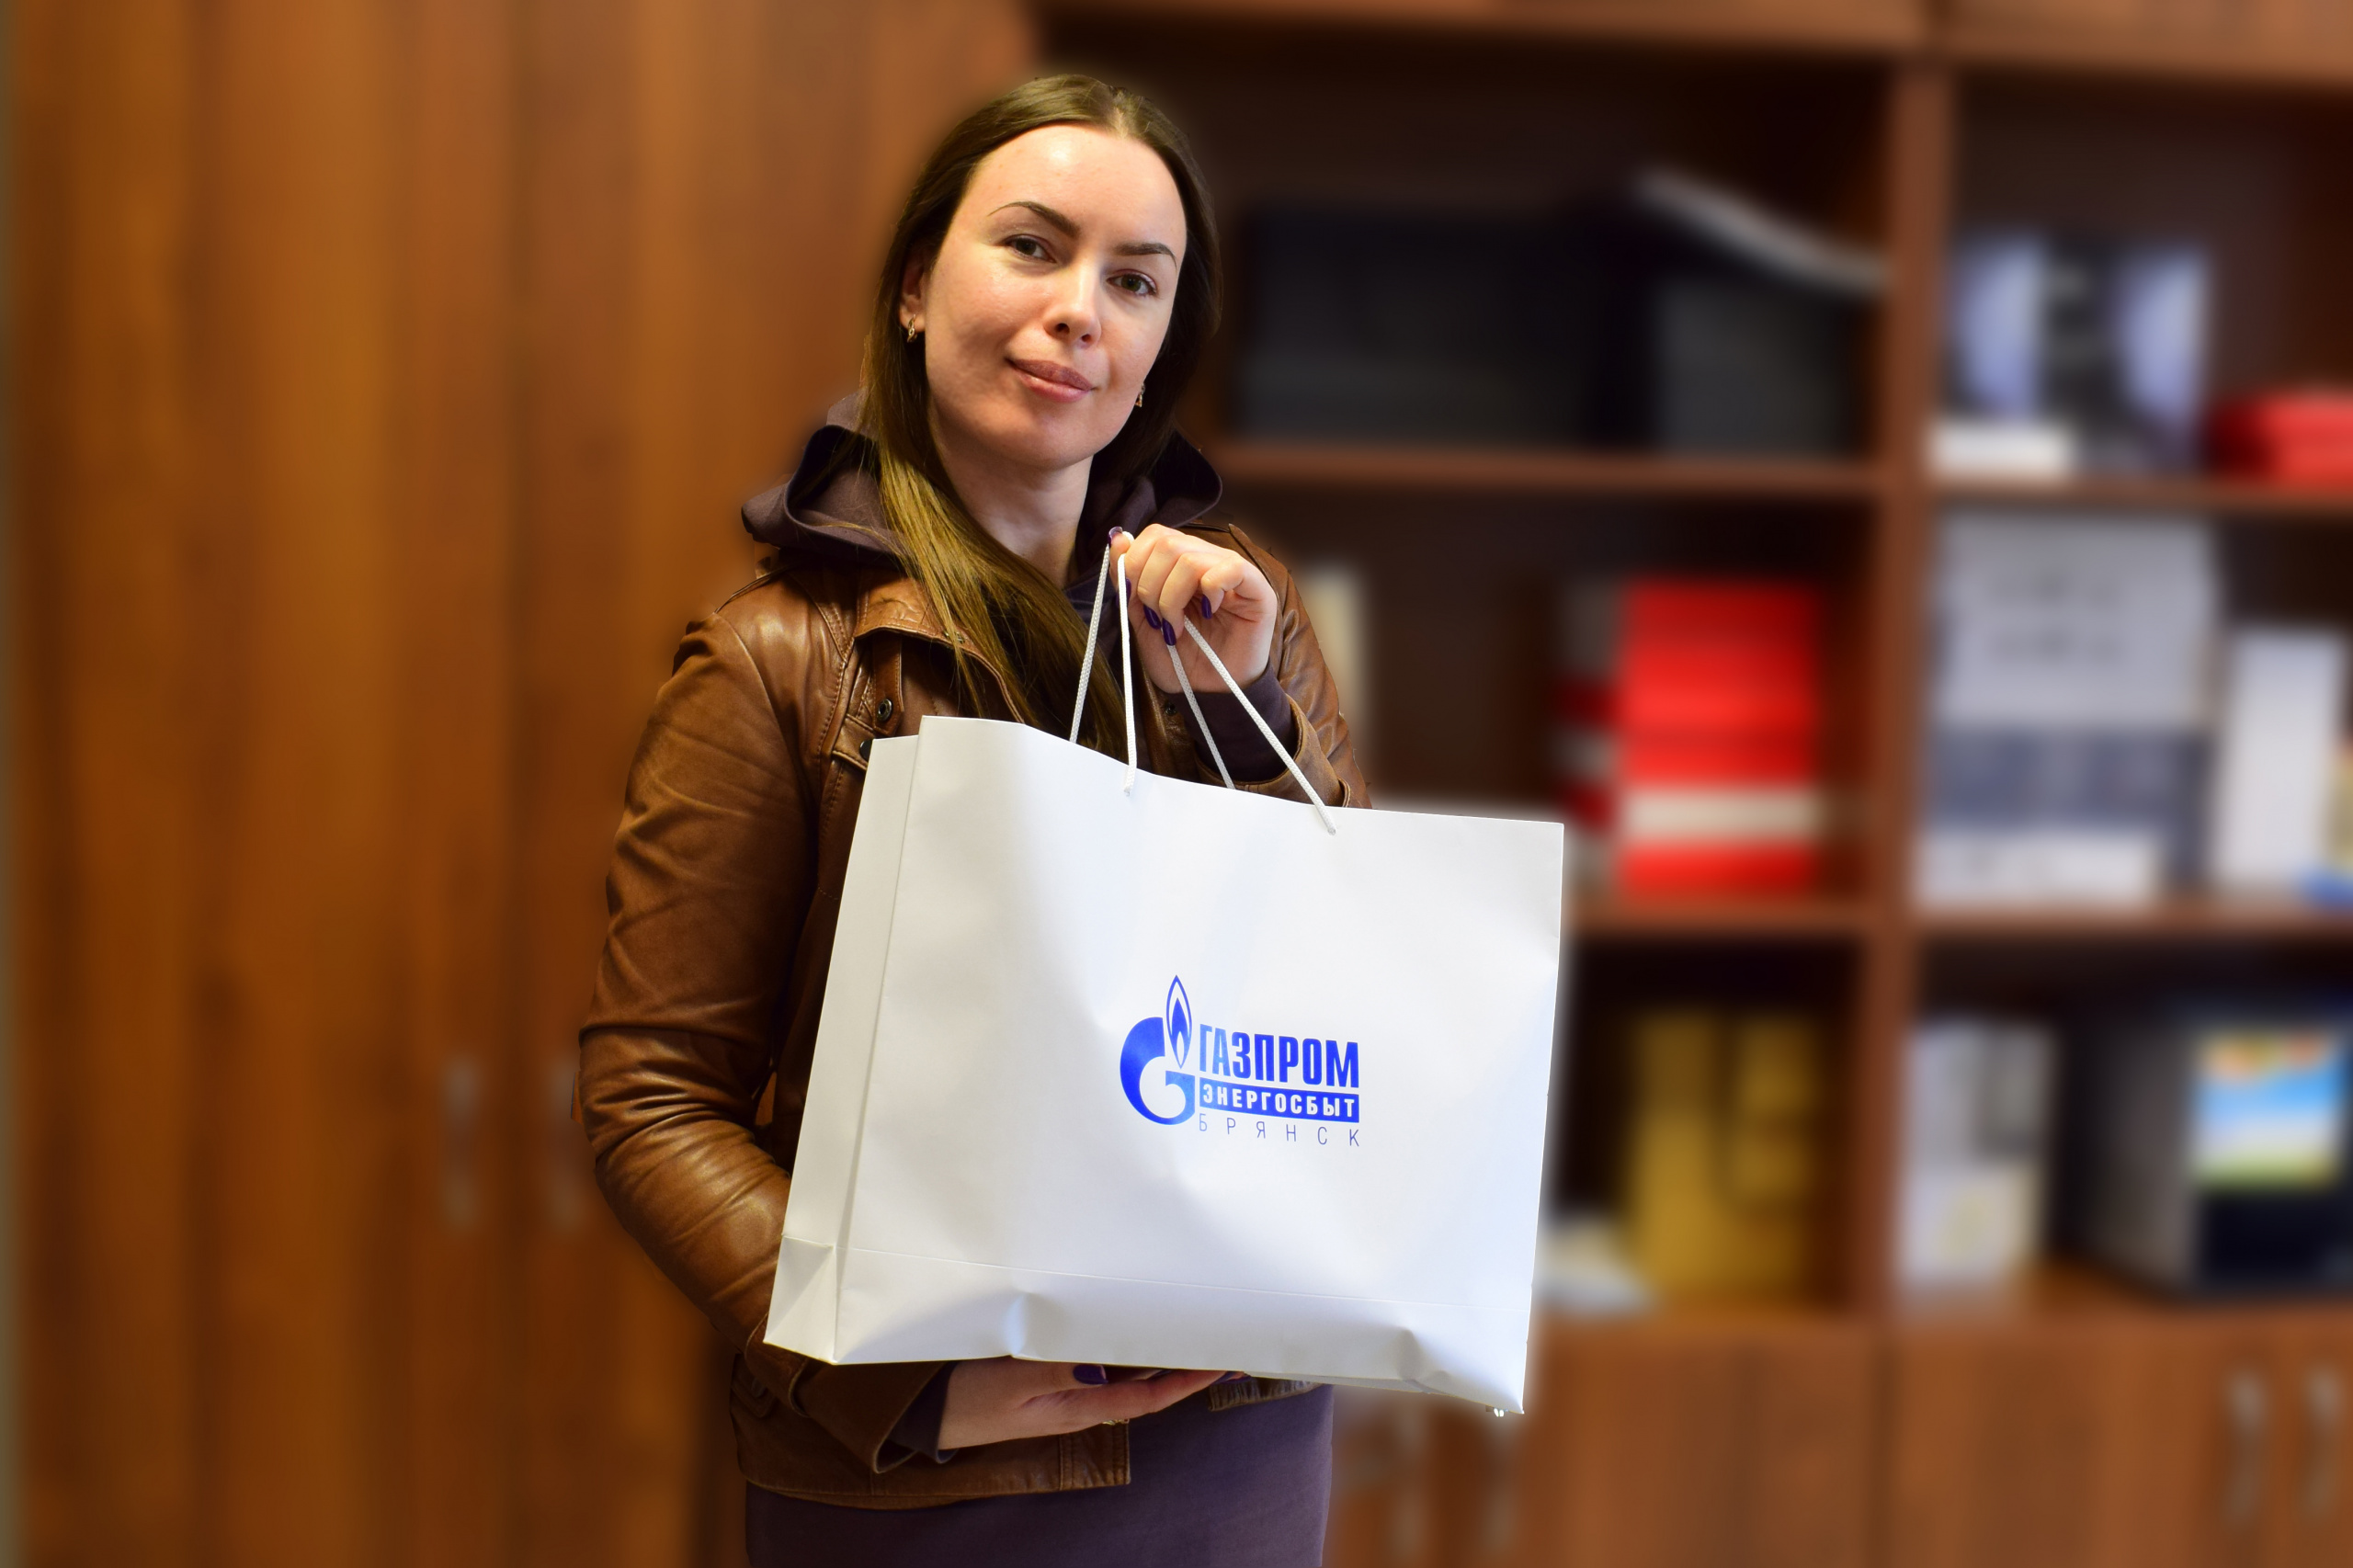  Победители акции «Переходи в онлайн» ООО «Газпром энергосбыт Брянск» получили призы 